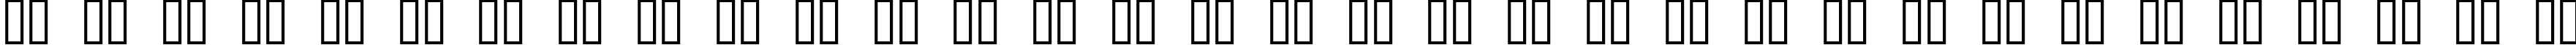 Пример написания русского алфавита шрифтом Jackson